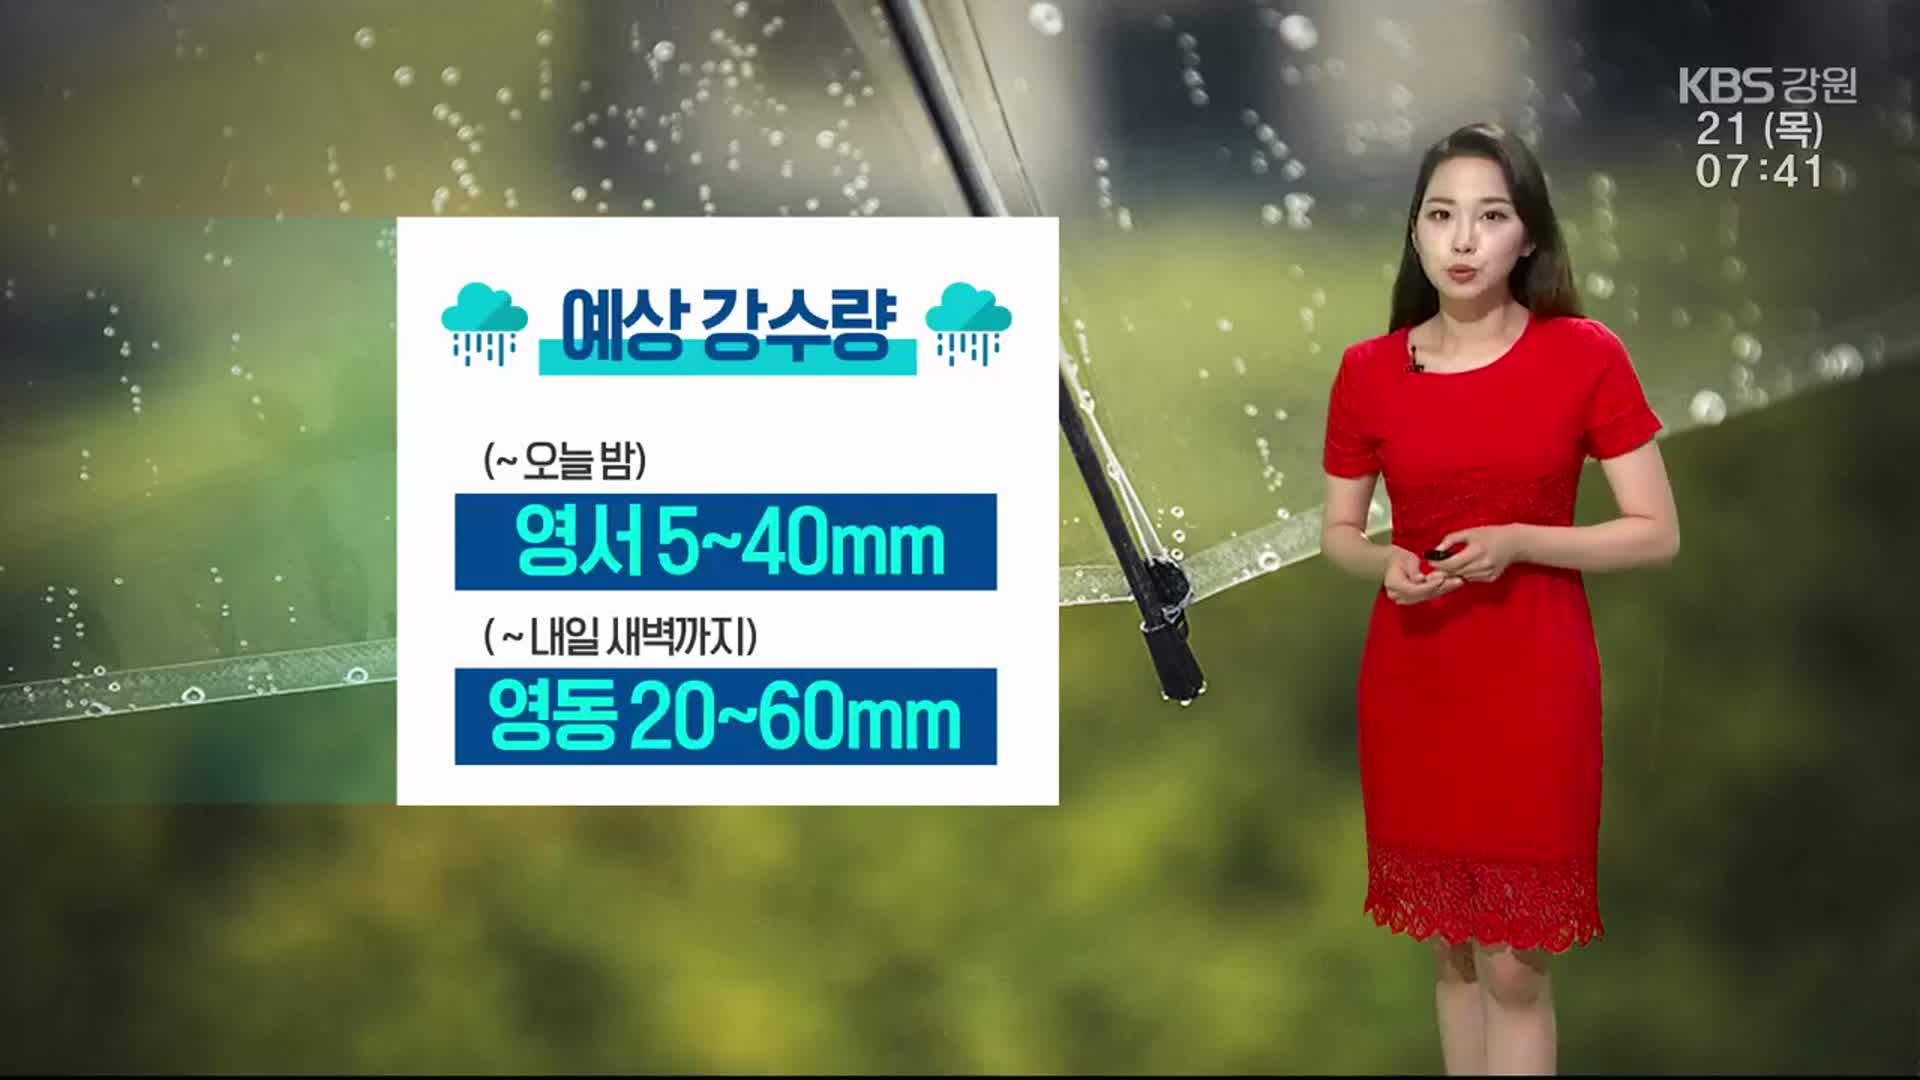 [날씨] 강원 영서 5~40mm·영동 20~60mm 비소식